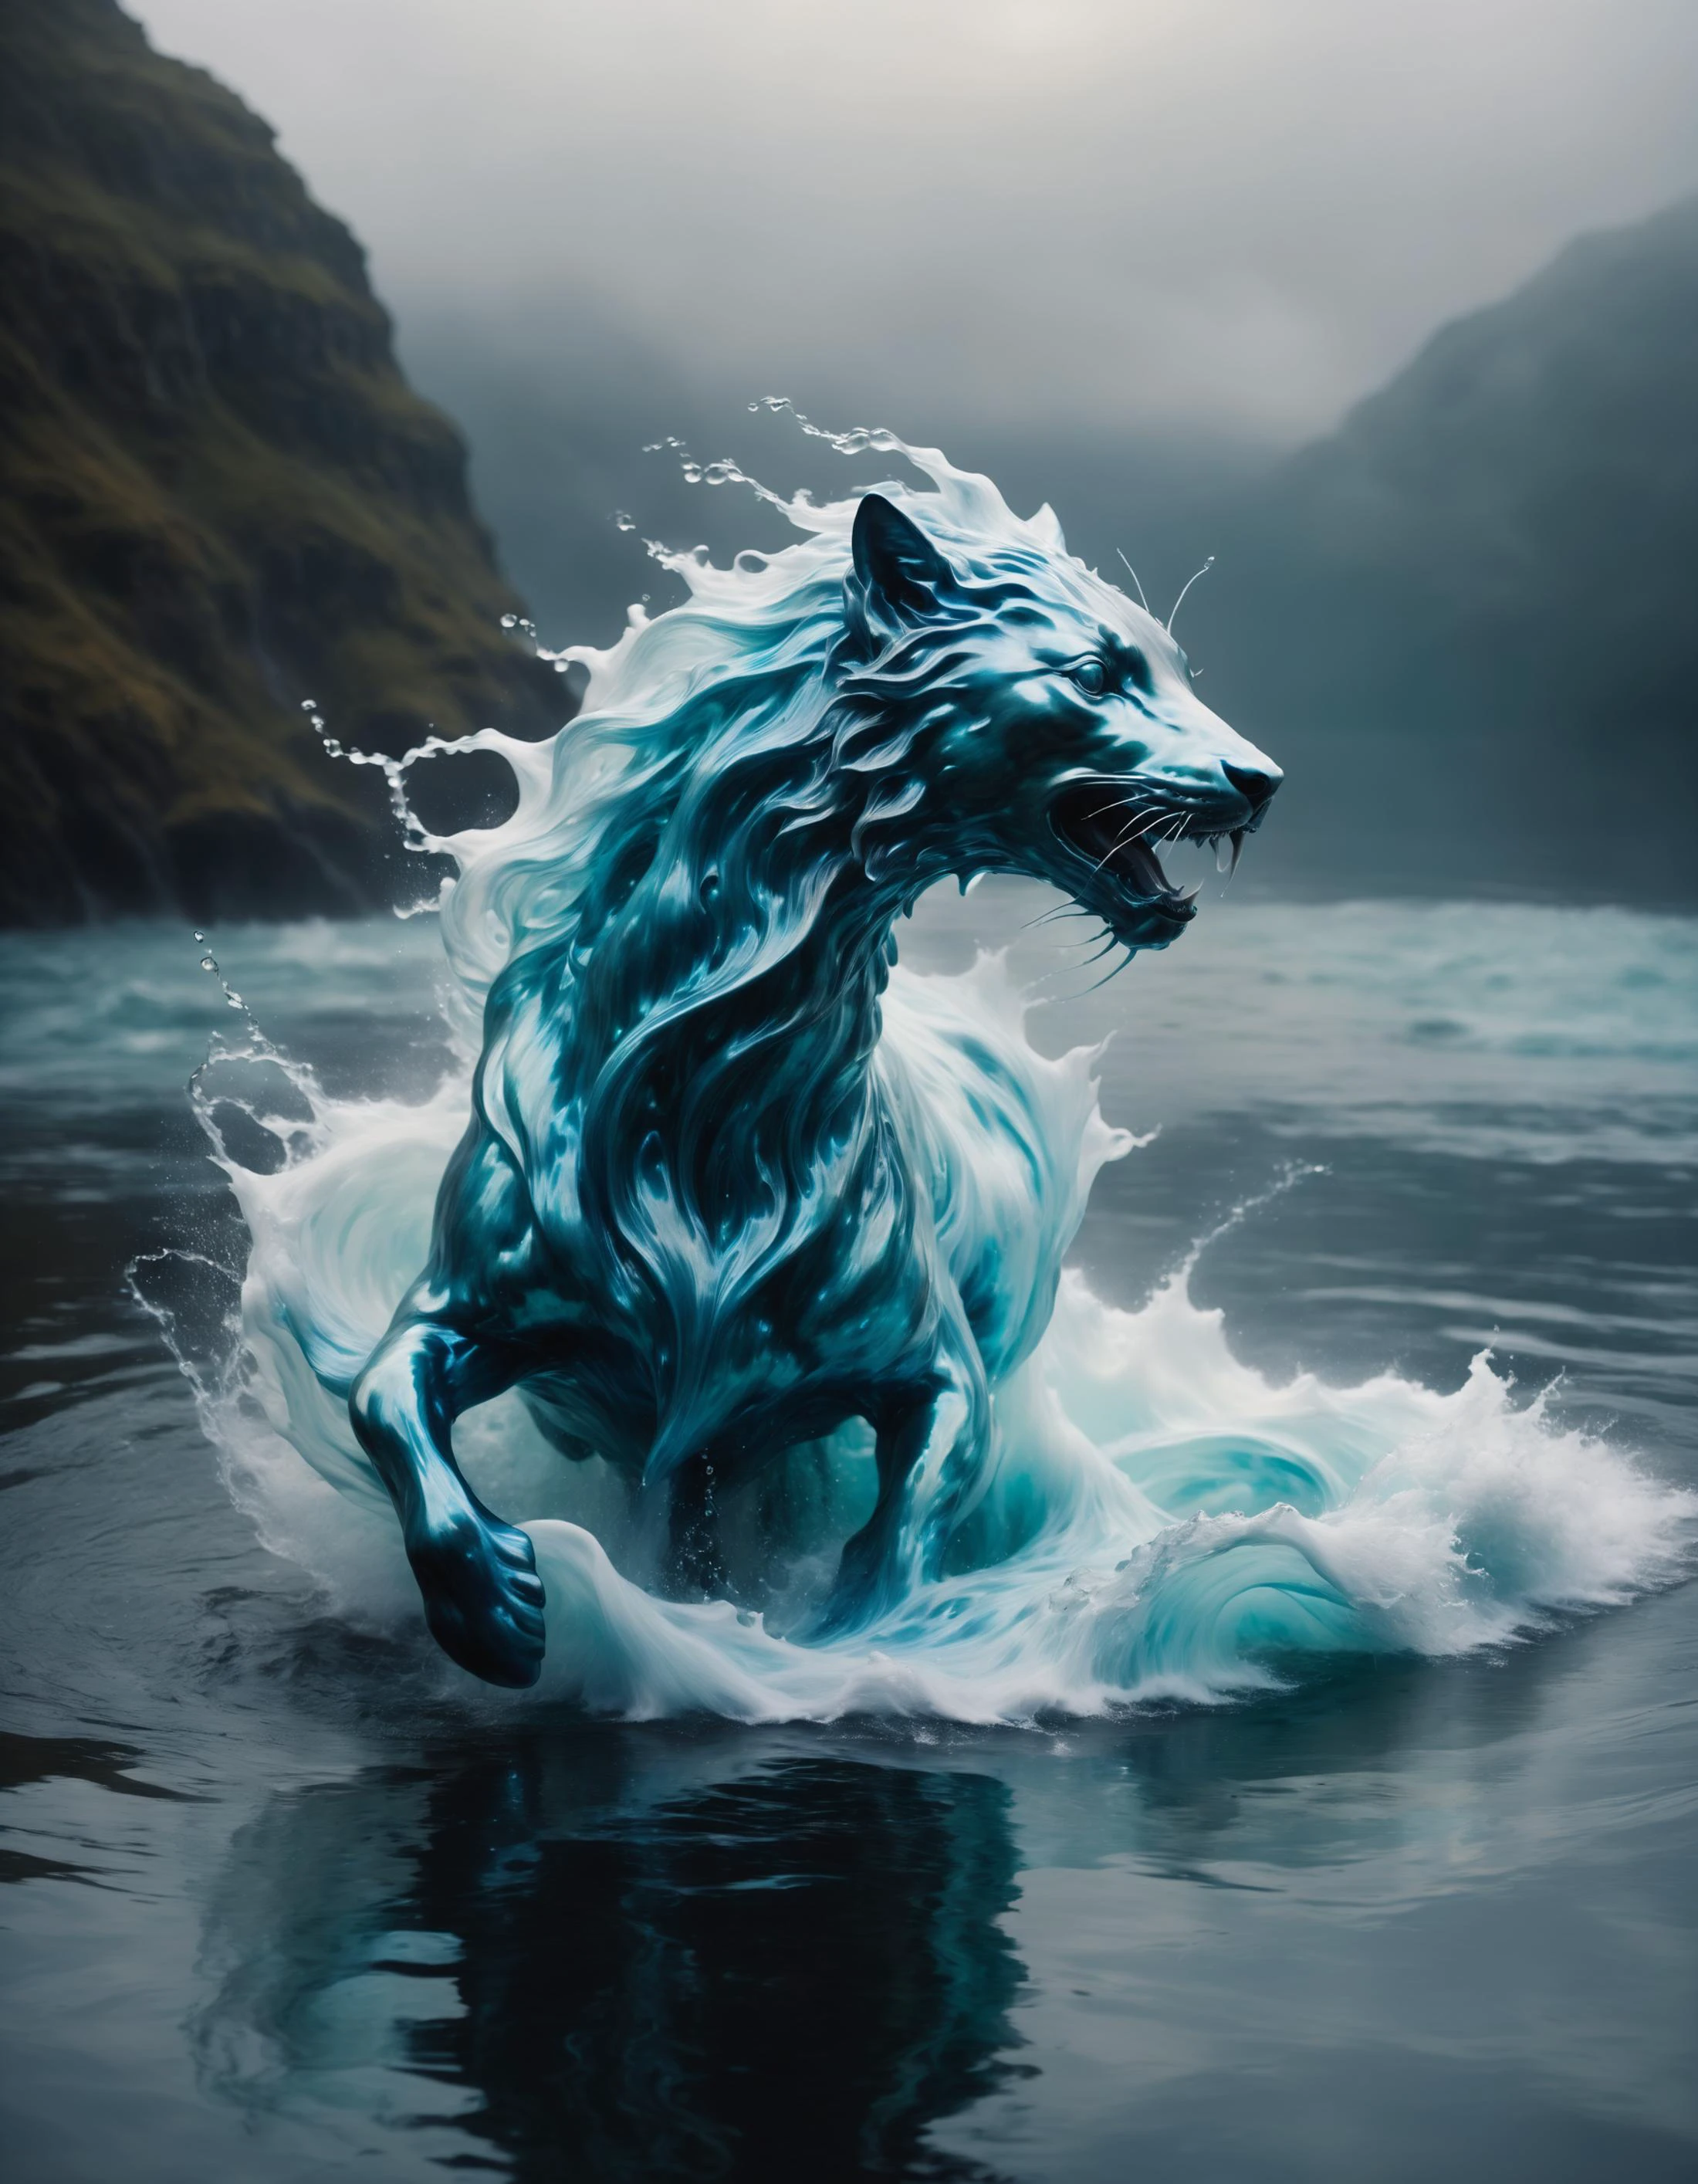 Criatura fantástica hecha de agua turbulenta, forma etérea, inspirado en el surrealismo